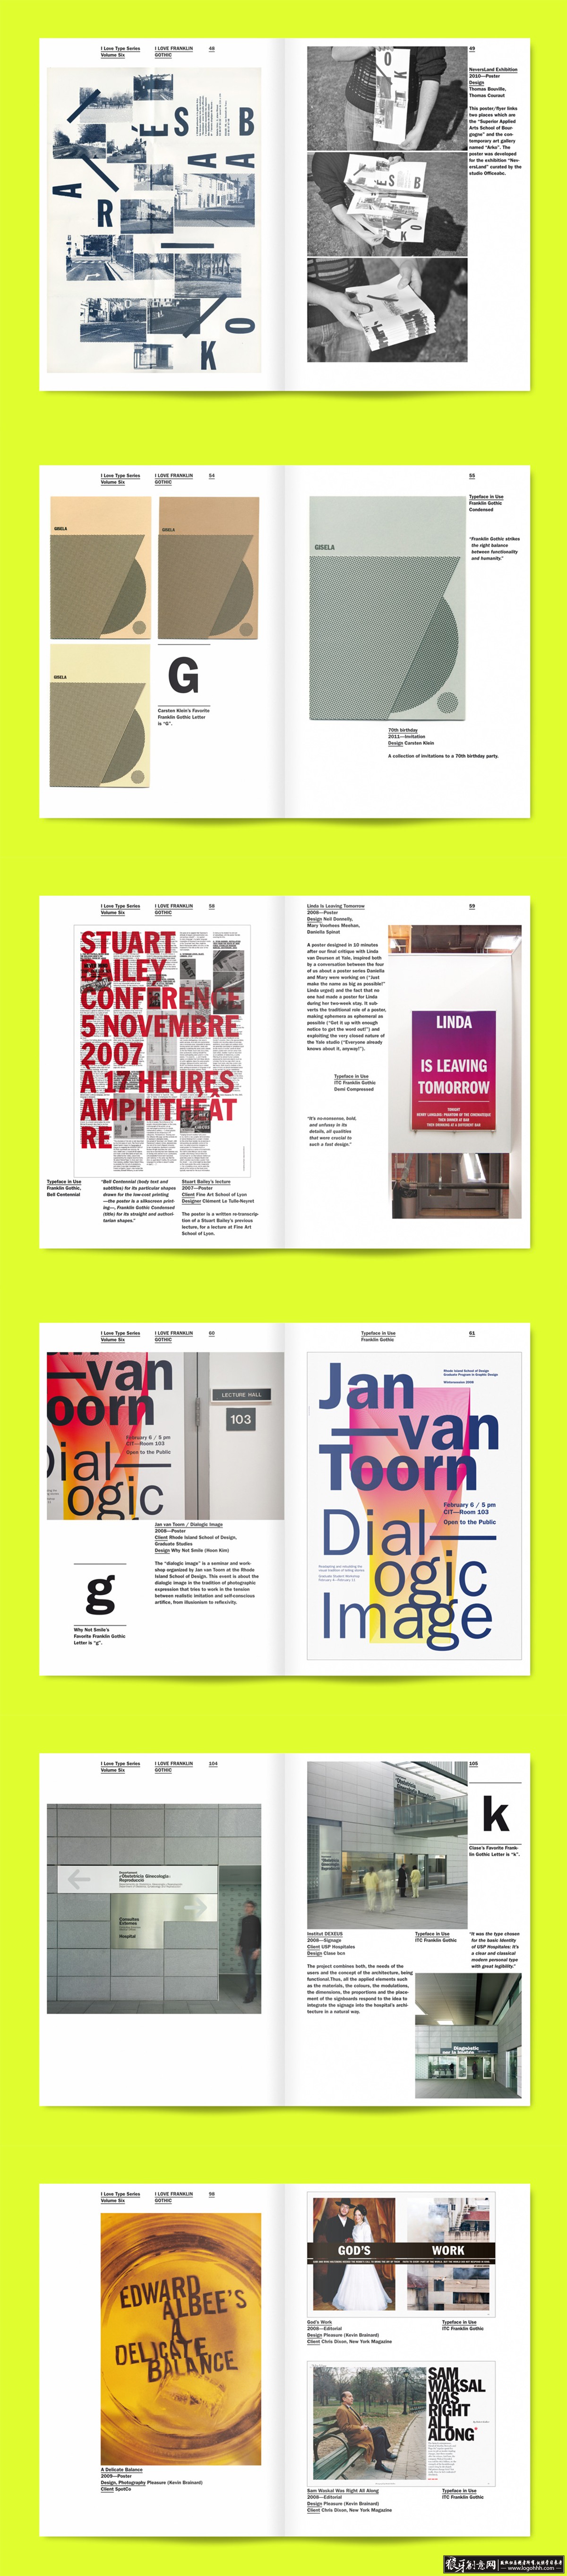 国外画册 画册版式设计 杂志设计 广告设计 精美杂志版式设计 排版